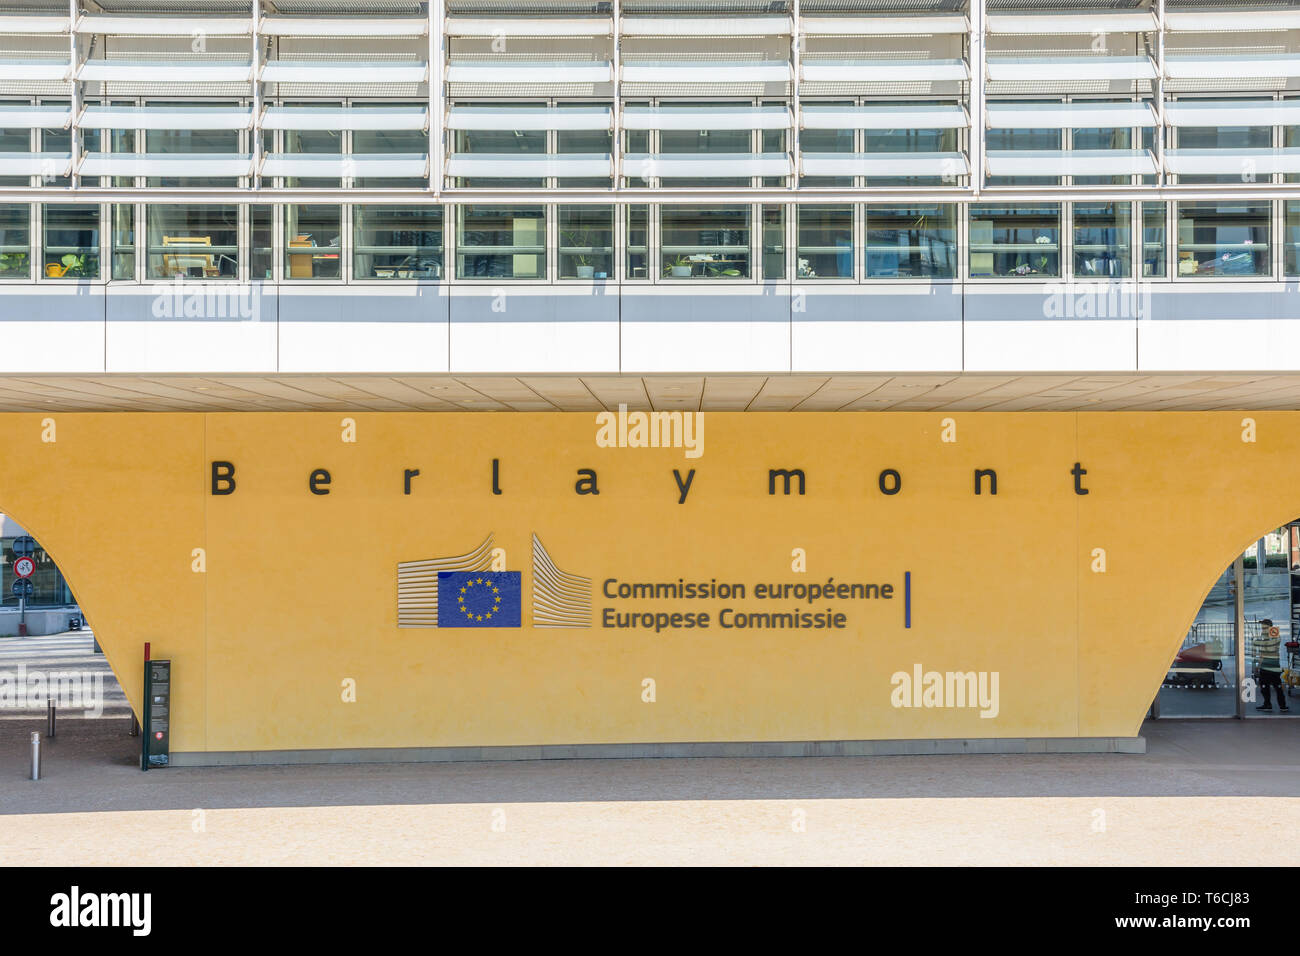 Vue frontale d'un pilier de l'immeuble Berlaymont à Bruxelles, Belgique, portant le logo et le nom de la Commission européenne en lettres noires. Banque D'Images